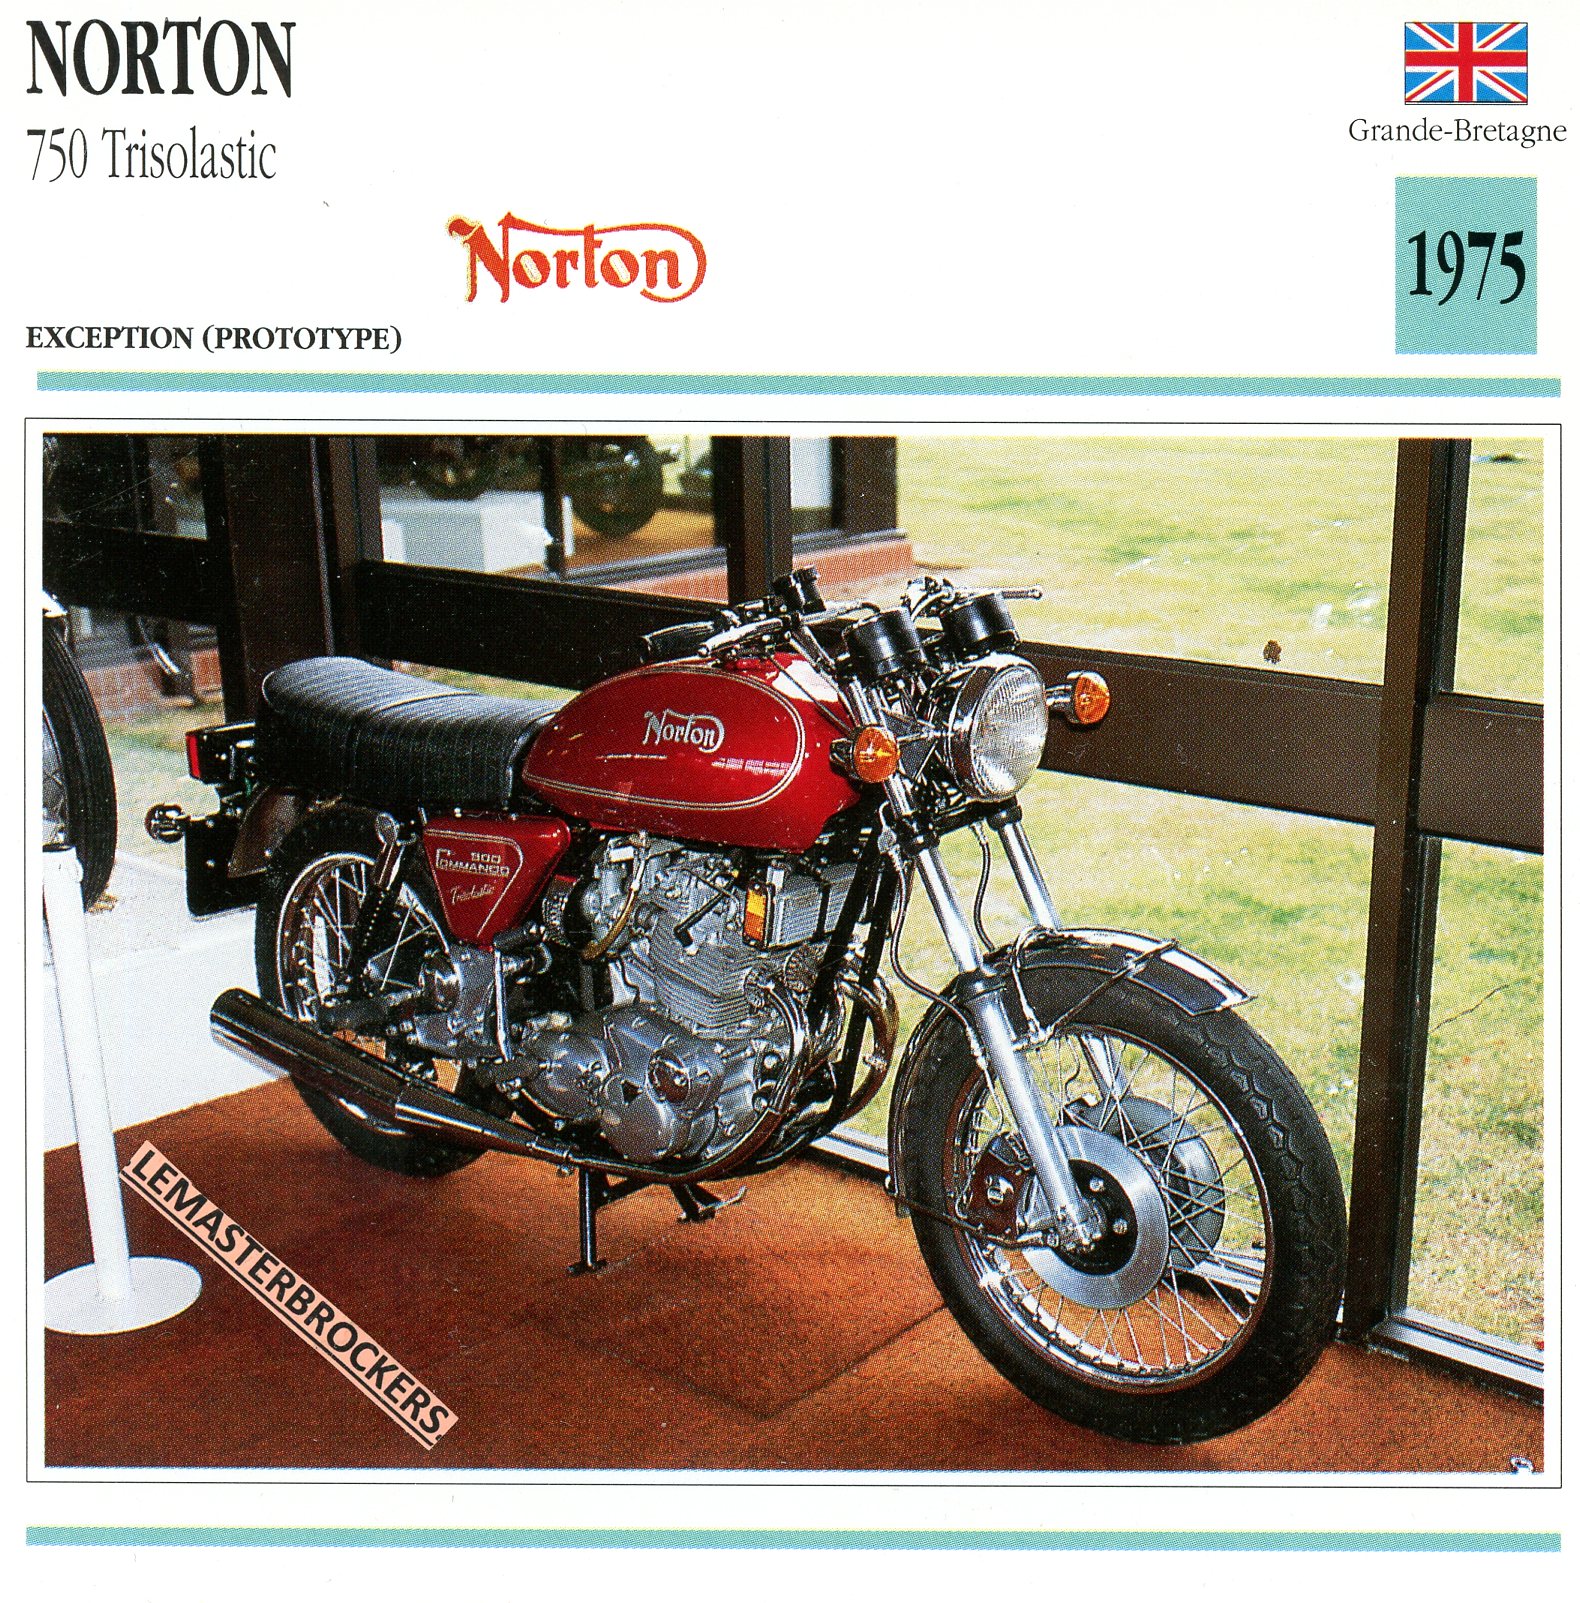 NORTON-750-TRISOLASTIC-1975-FICHE-MOTO-ATLAS-lemasterbrockers-CARD-MOTORCYCLE